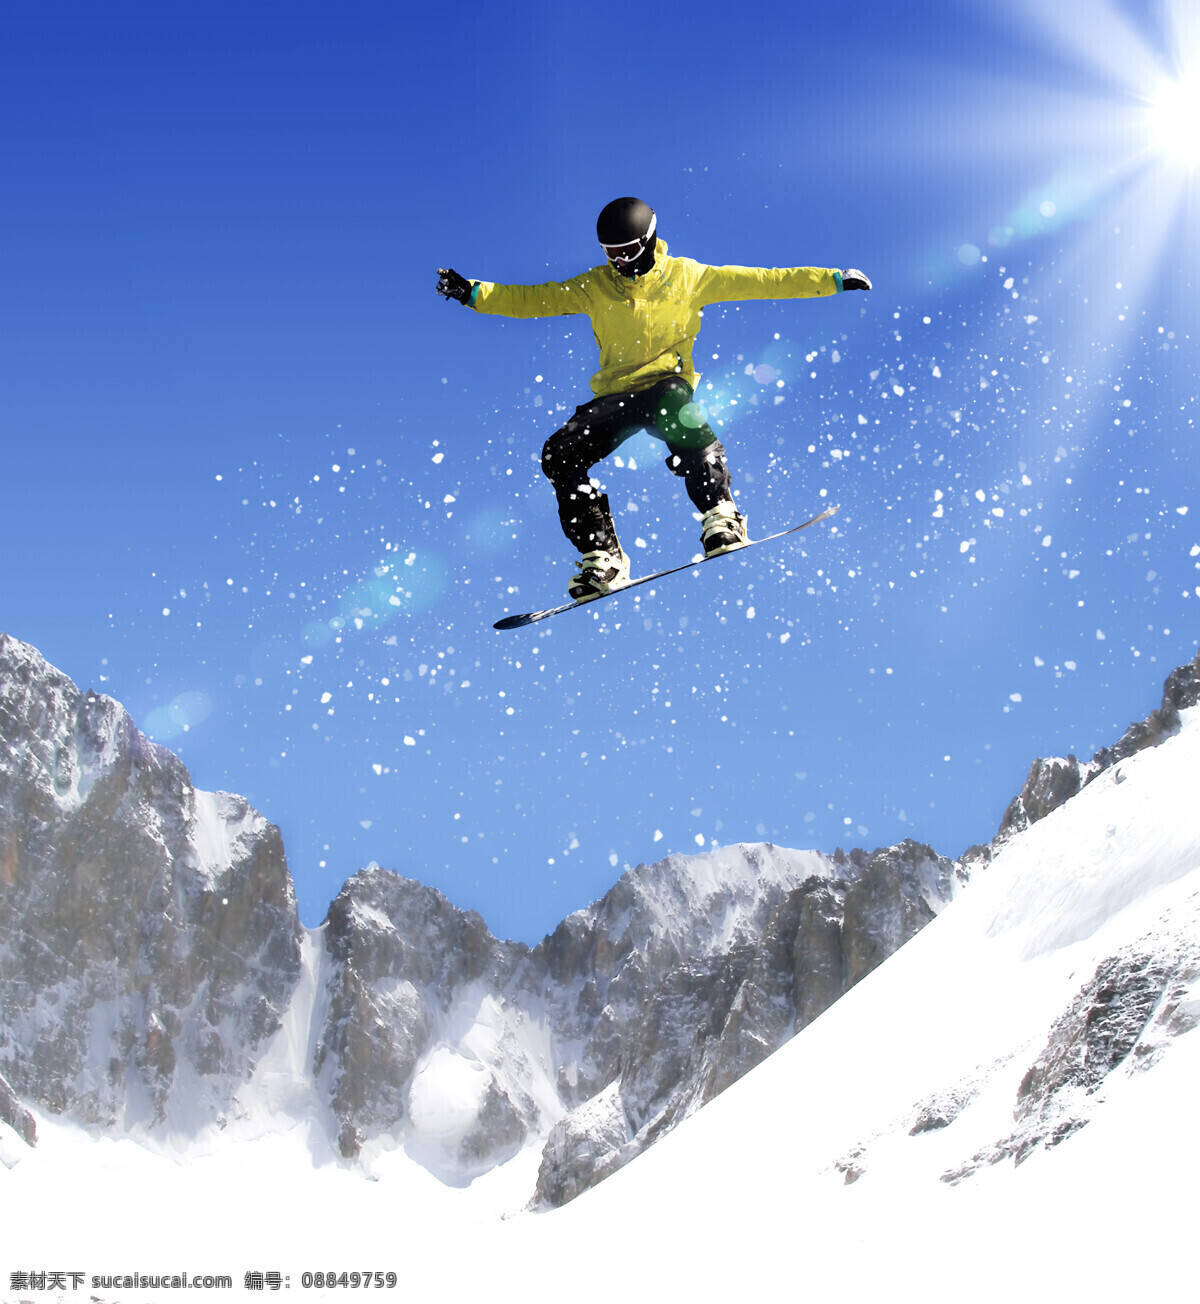 雪坡 上 跃 下 滑雪 运动员 跃下 运动 人物 体育 滑雪图片 生活百科